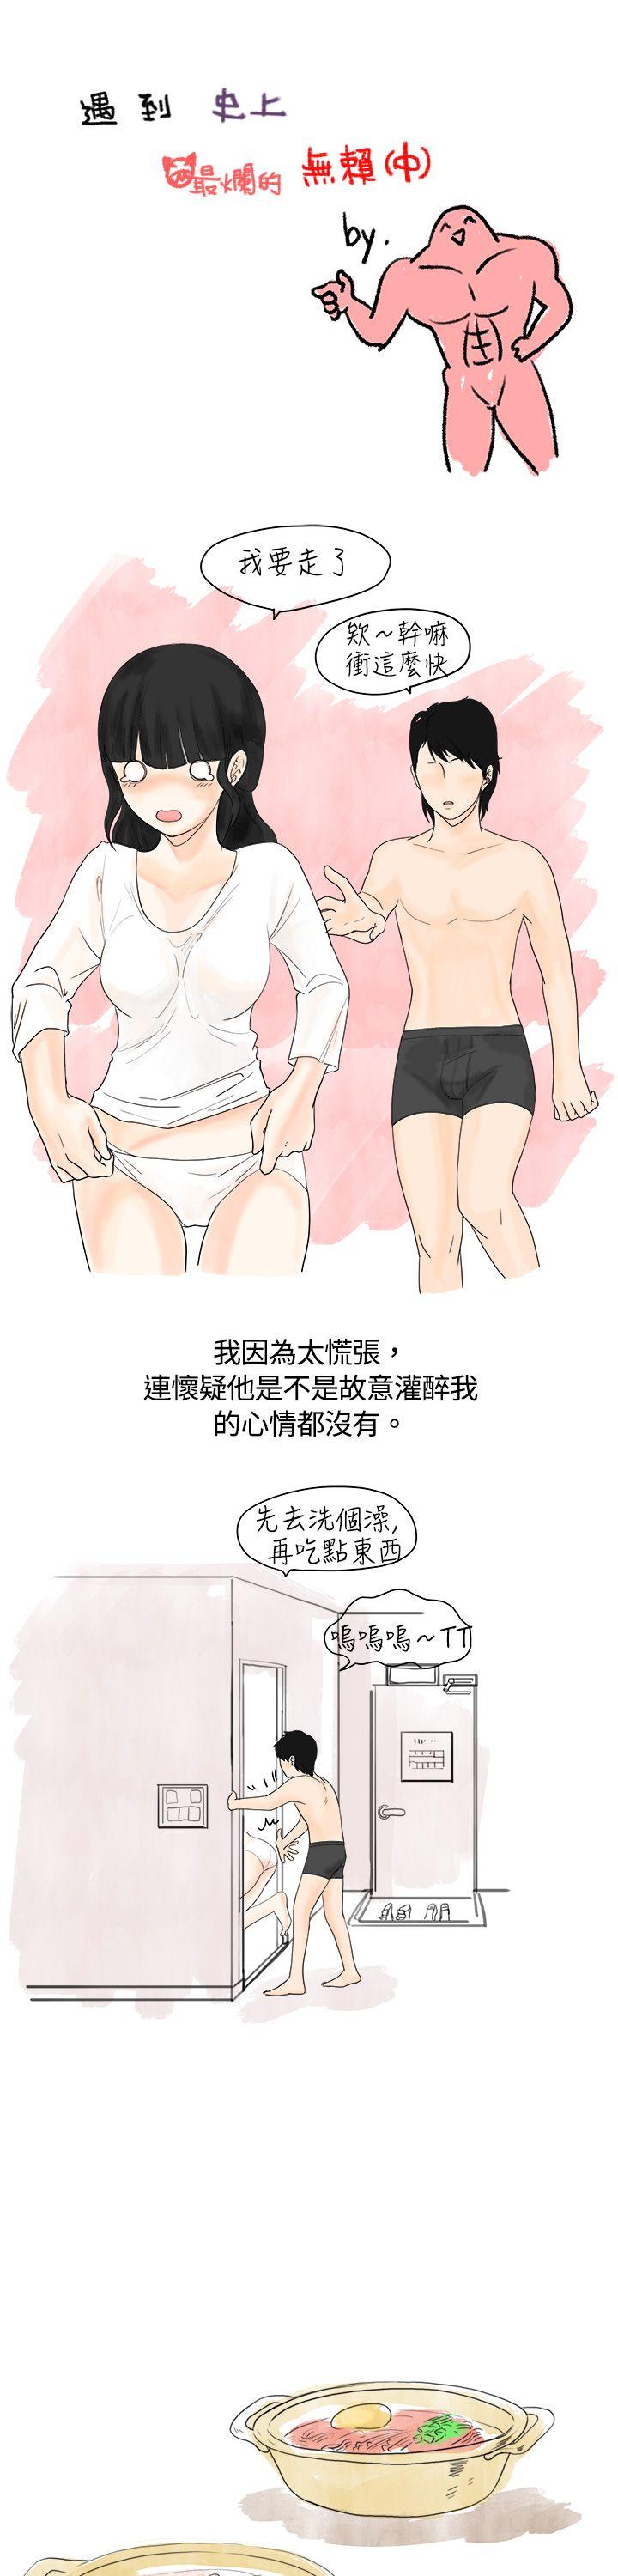 韩国污漫画 秘密Story 遇到史上最烂的无赖(中) 1